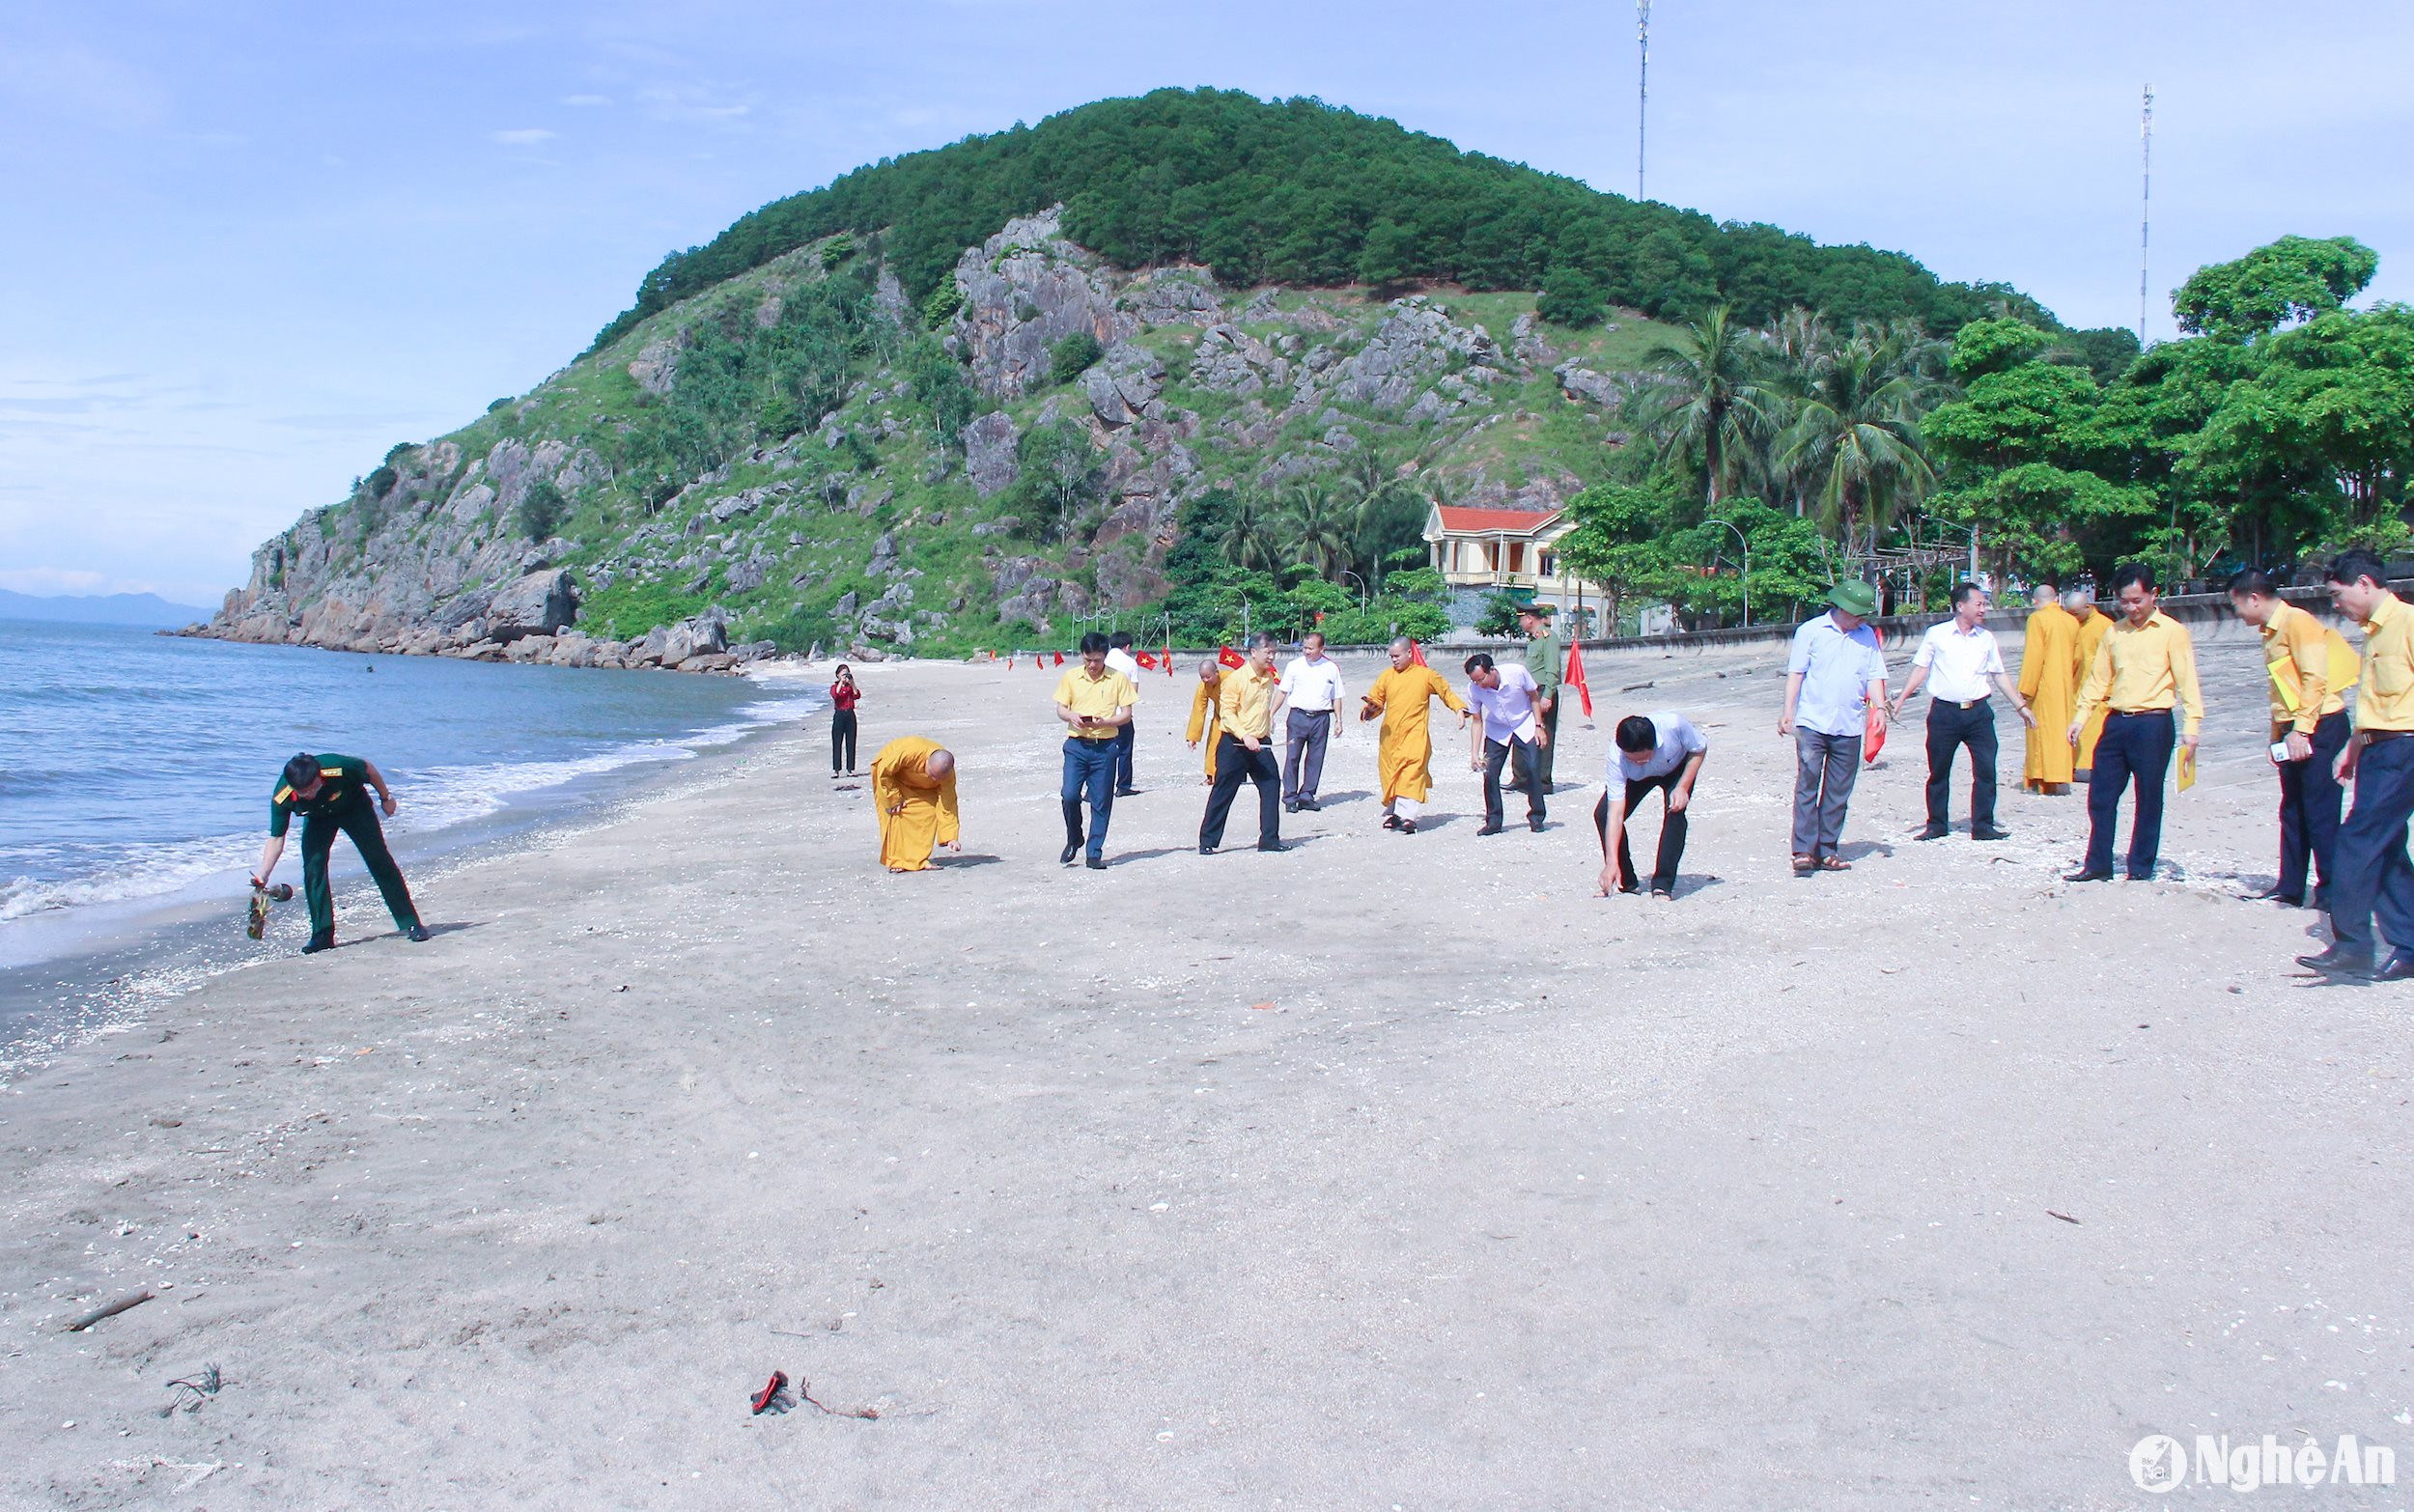 lãnh đạo các sở, ban, ngành, đoàn thể cấp tỉnh và huyện Quỳnh Lưu, các tổ chức tôn giáo, tín đồ đã ra quân làm vệ sinh môi trường, thu gom rác thải tại khu vực bãi biển xã Quỳnh Long. Ảnh: Mai Hoa